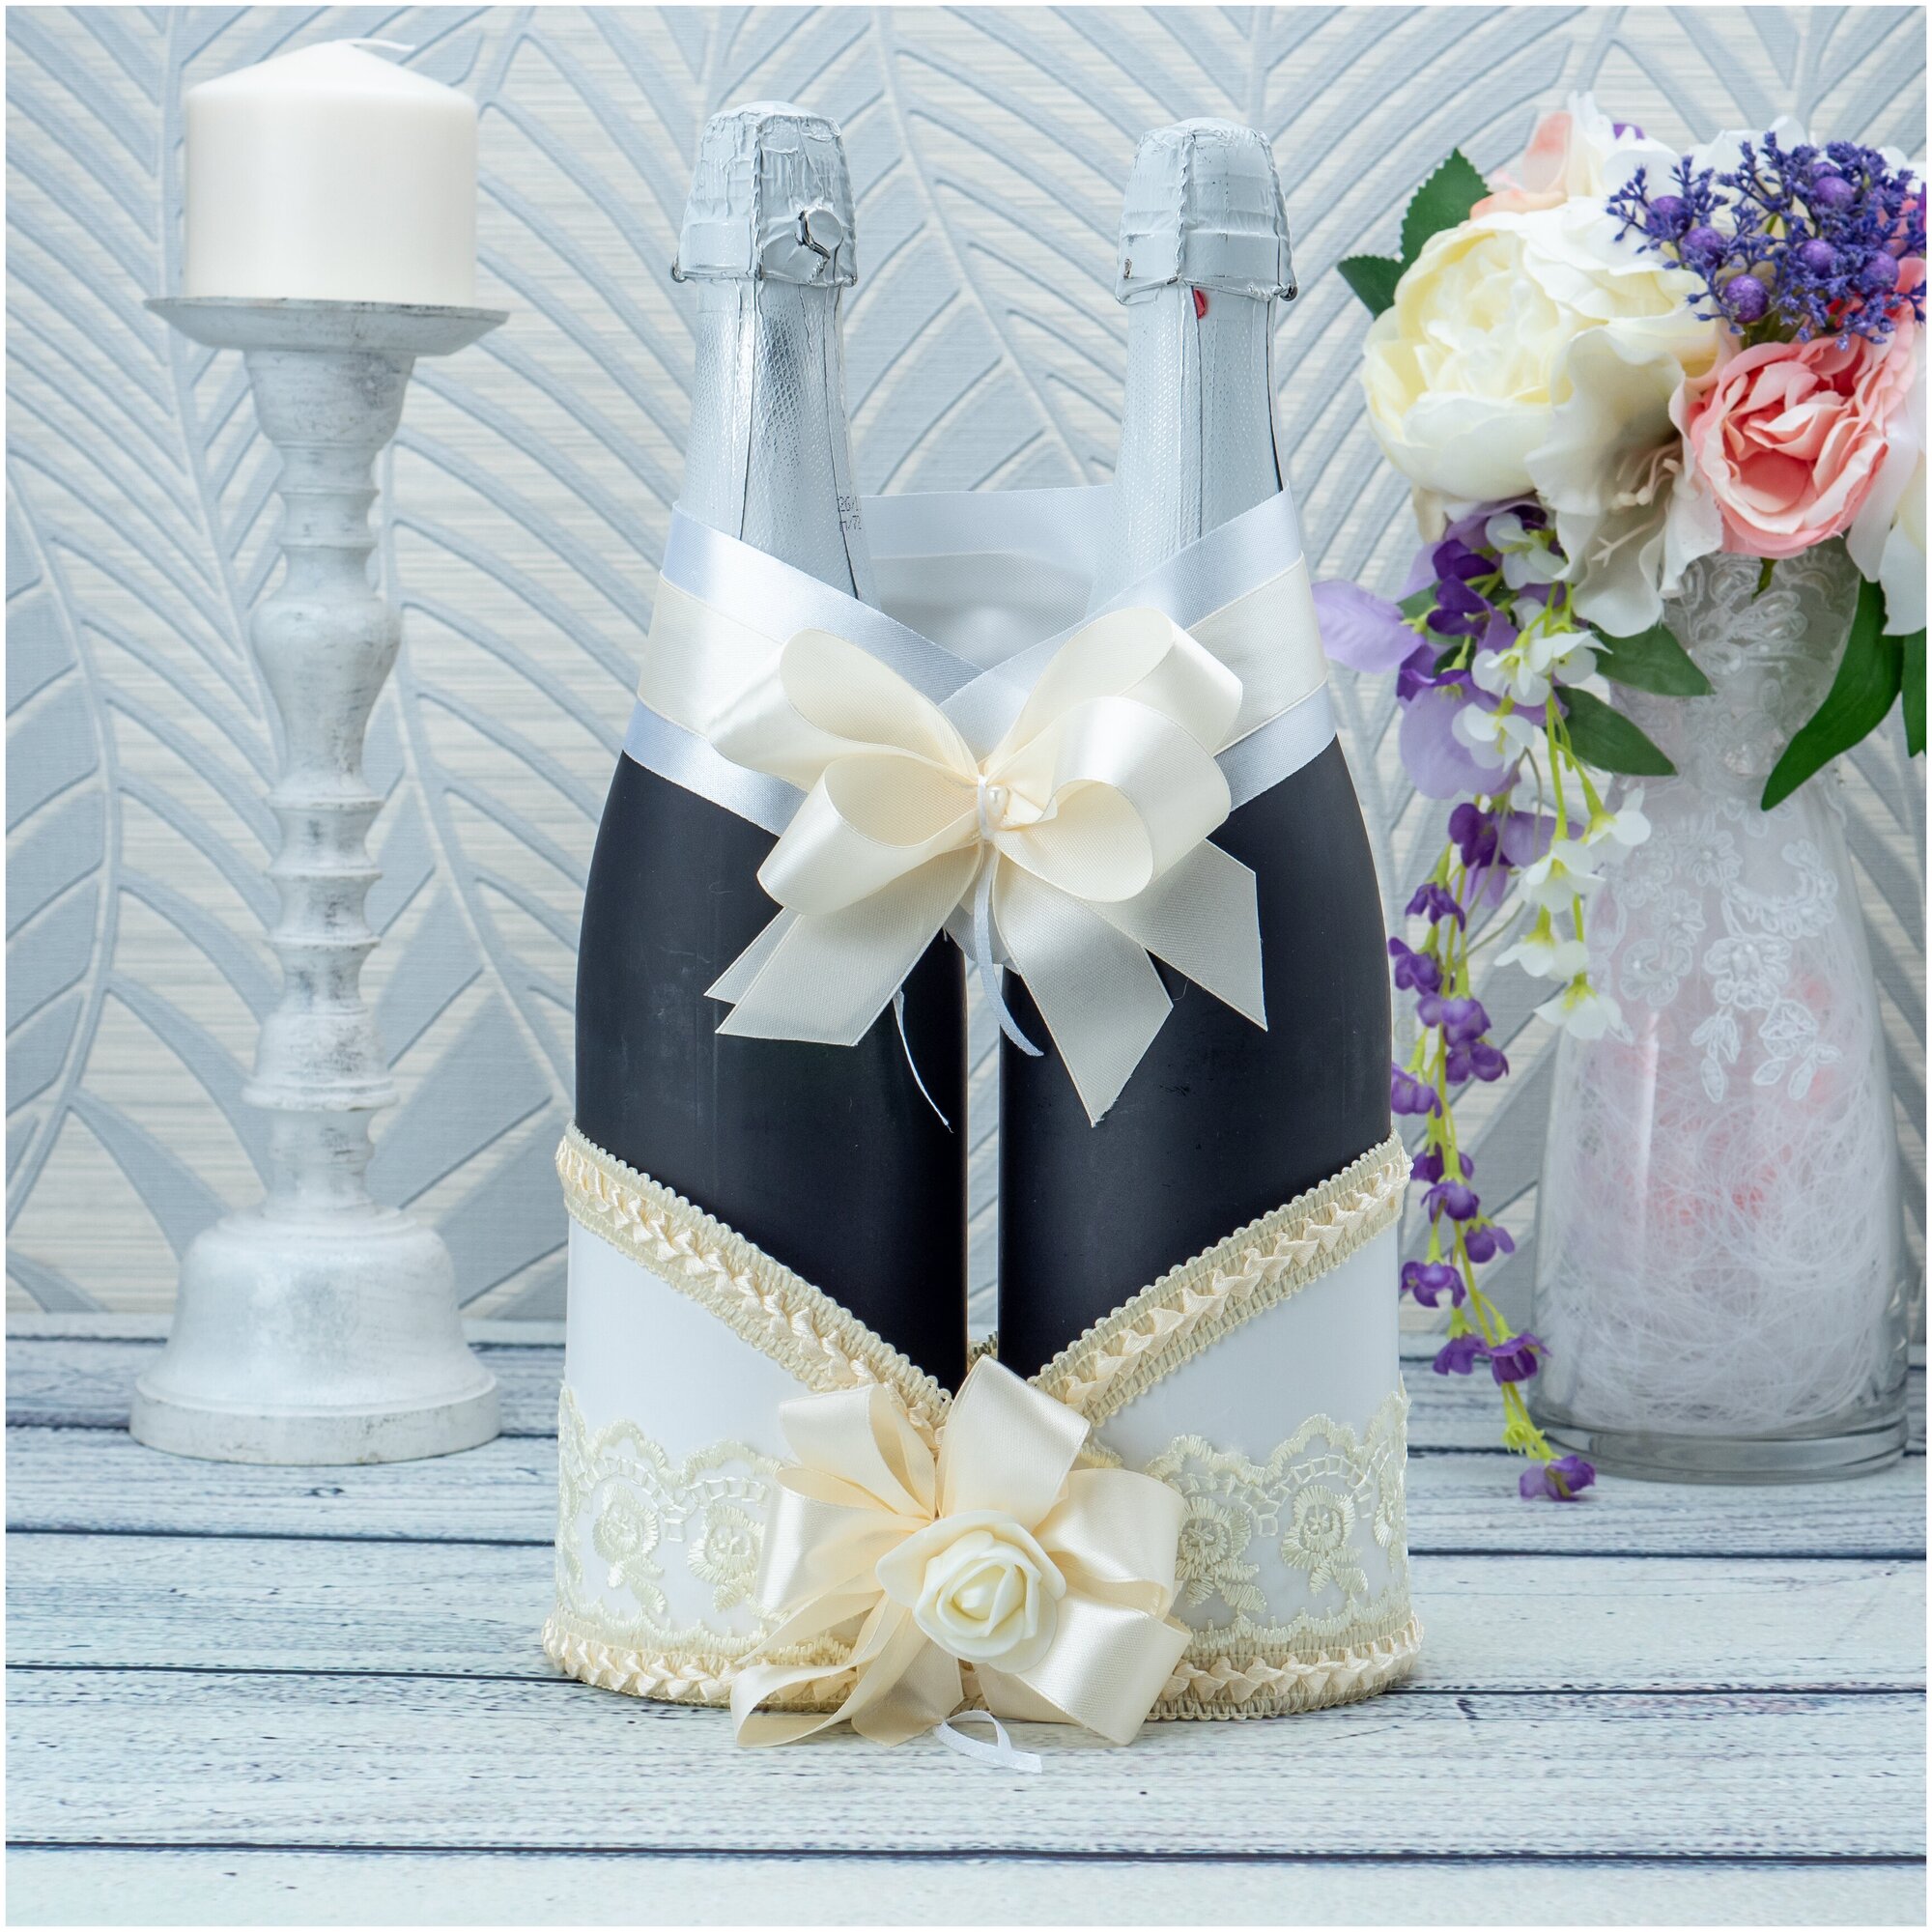 Украшение для шампанского "Счастье" из плотной бумаги айвори, кружева и атласных бантов с текстильной розой кремового цвета